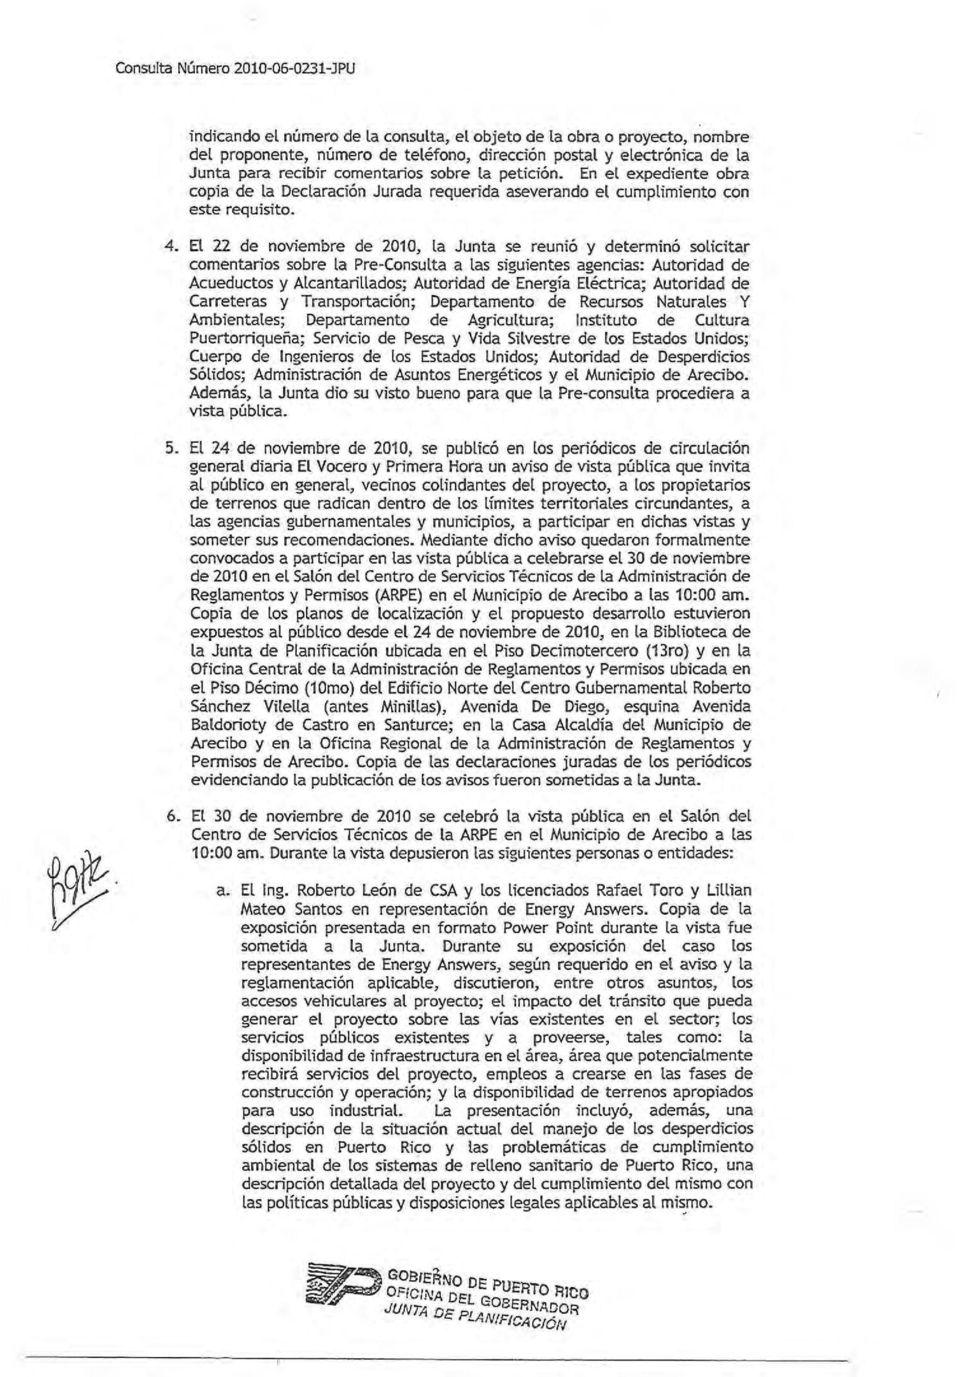 El 22 de noviembre de 2010, la Junta se reunió y determinó solicitar comentarios sobre la Pre-Consulta a las siguientes agencias: Autoridad de Acueductos y Alcantarillados; Autoridad de Energía